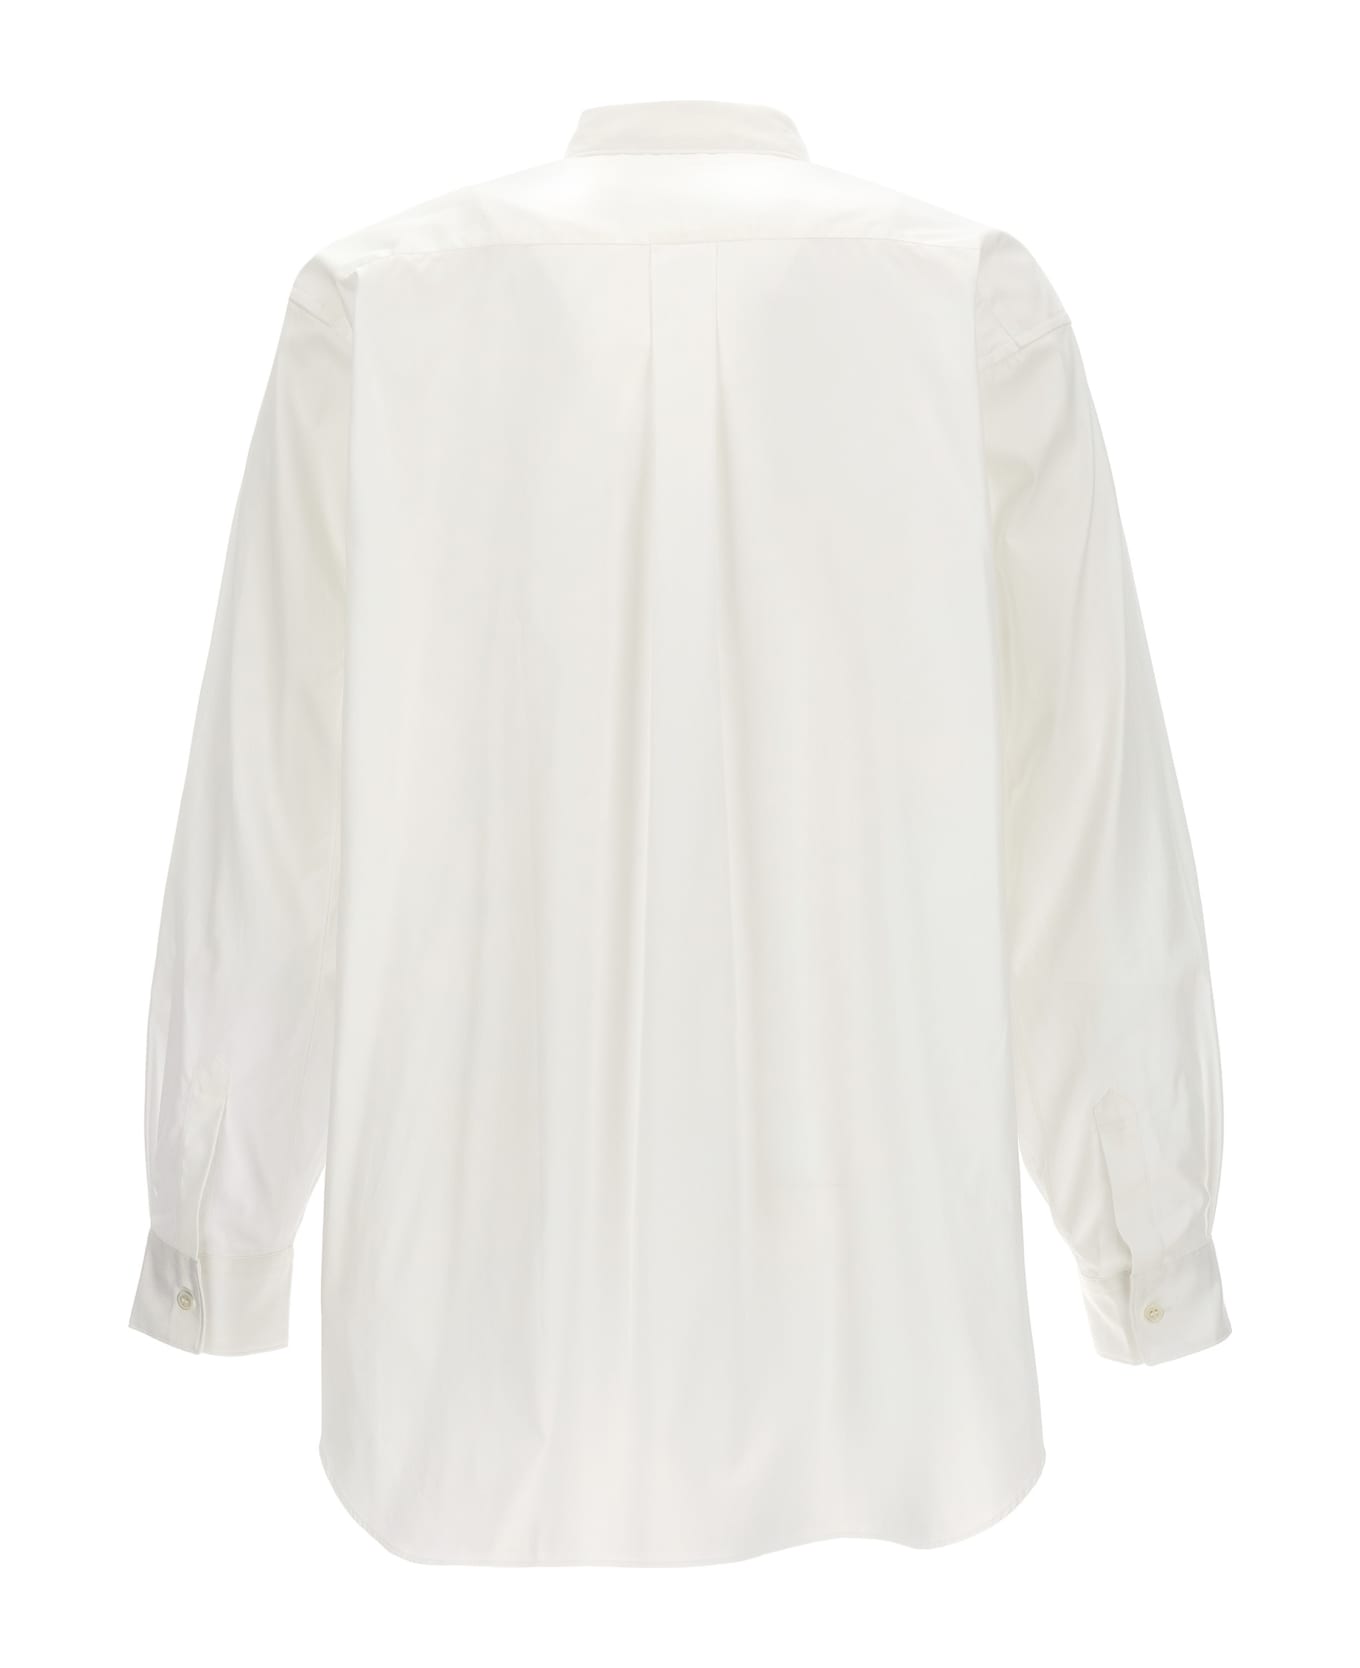 Comme des Garçons Shirt X Lacoste Shirt - White シャツ